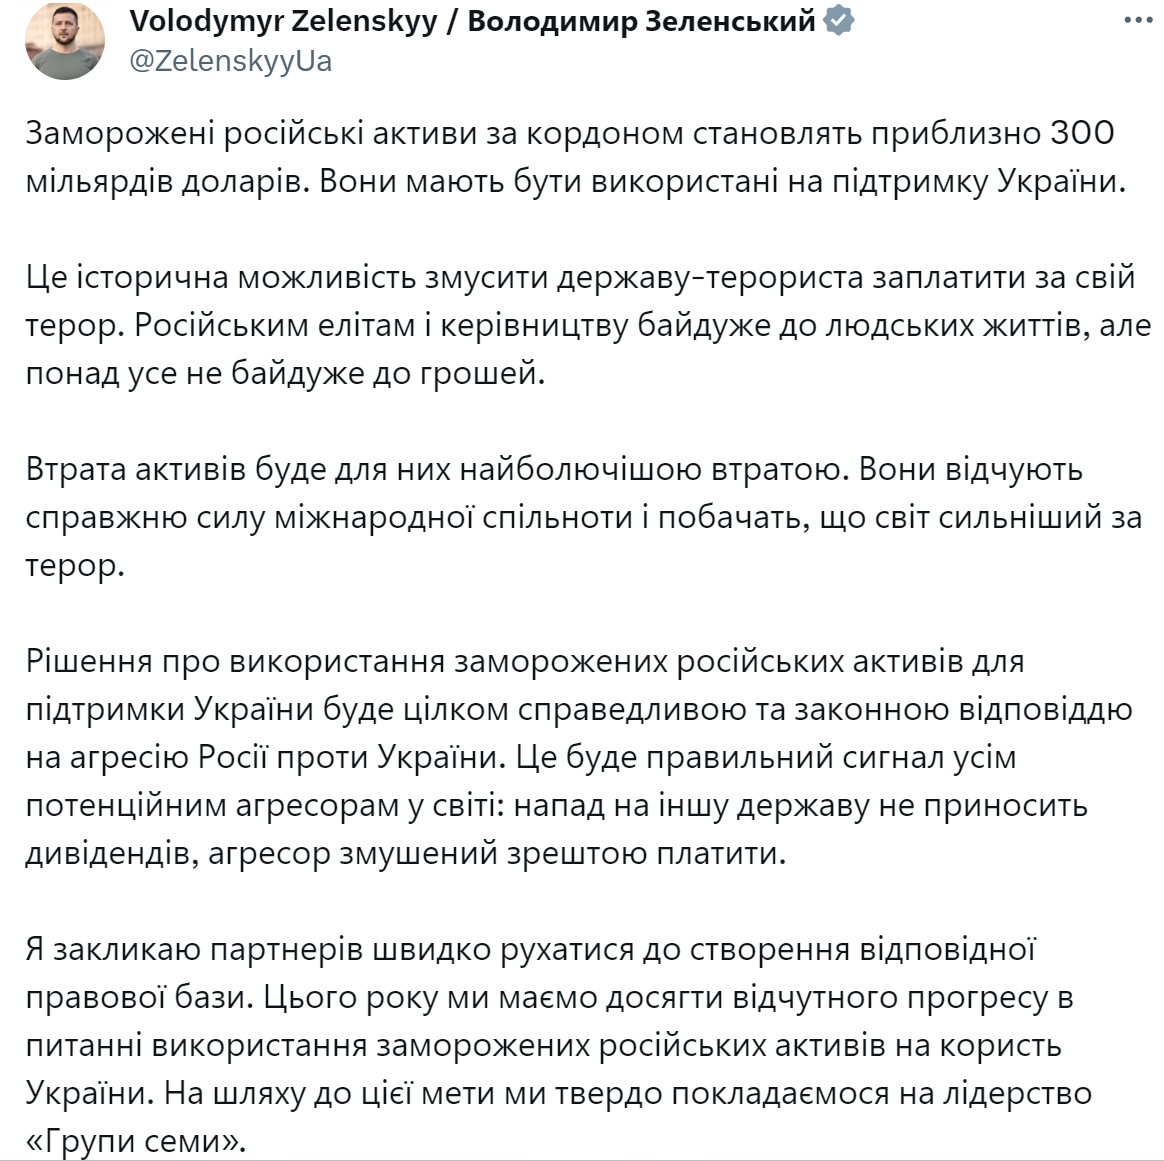 "Це буде правильний сигнал усім агресорам у світі": Зеленський закликав передати Україні заморожені активи Росії